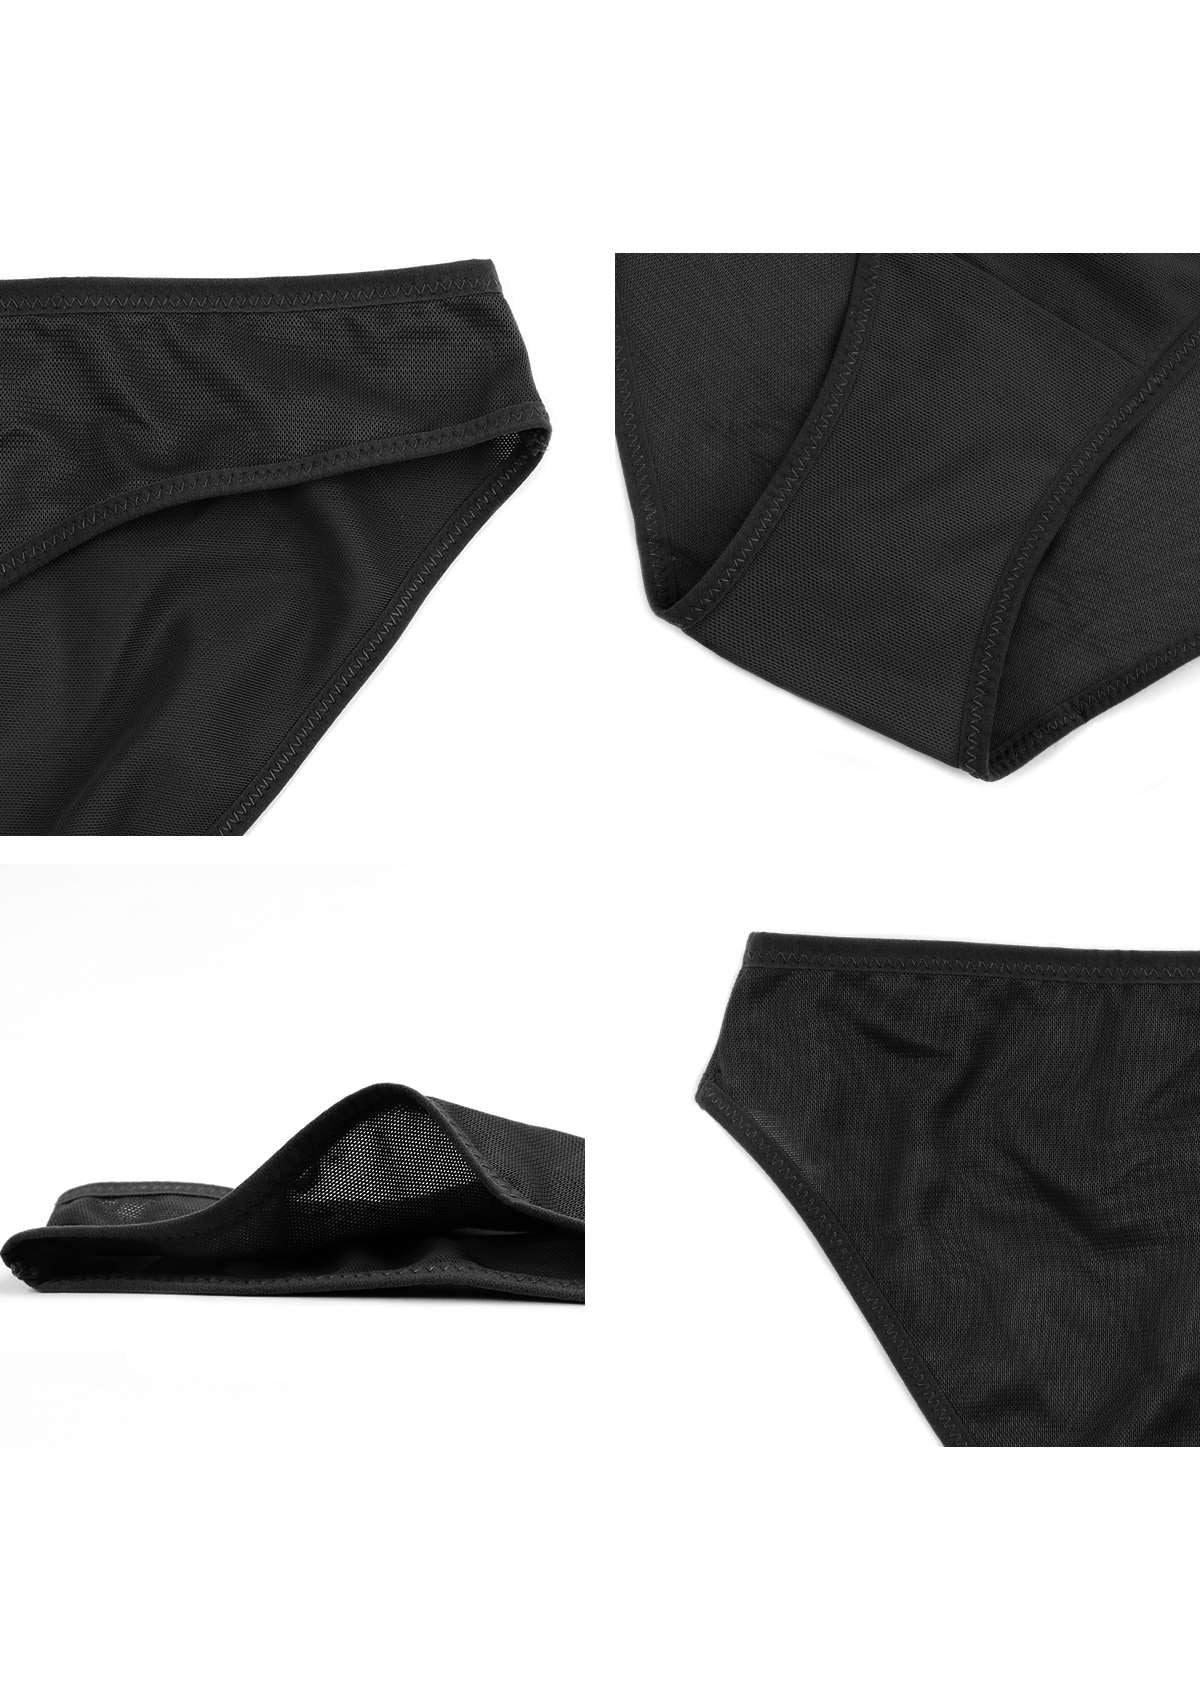 HSIA Billie Smooth Sheer Mesh Lightweight Soft Comfy Bikini Underwear - S / Black